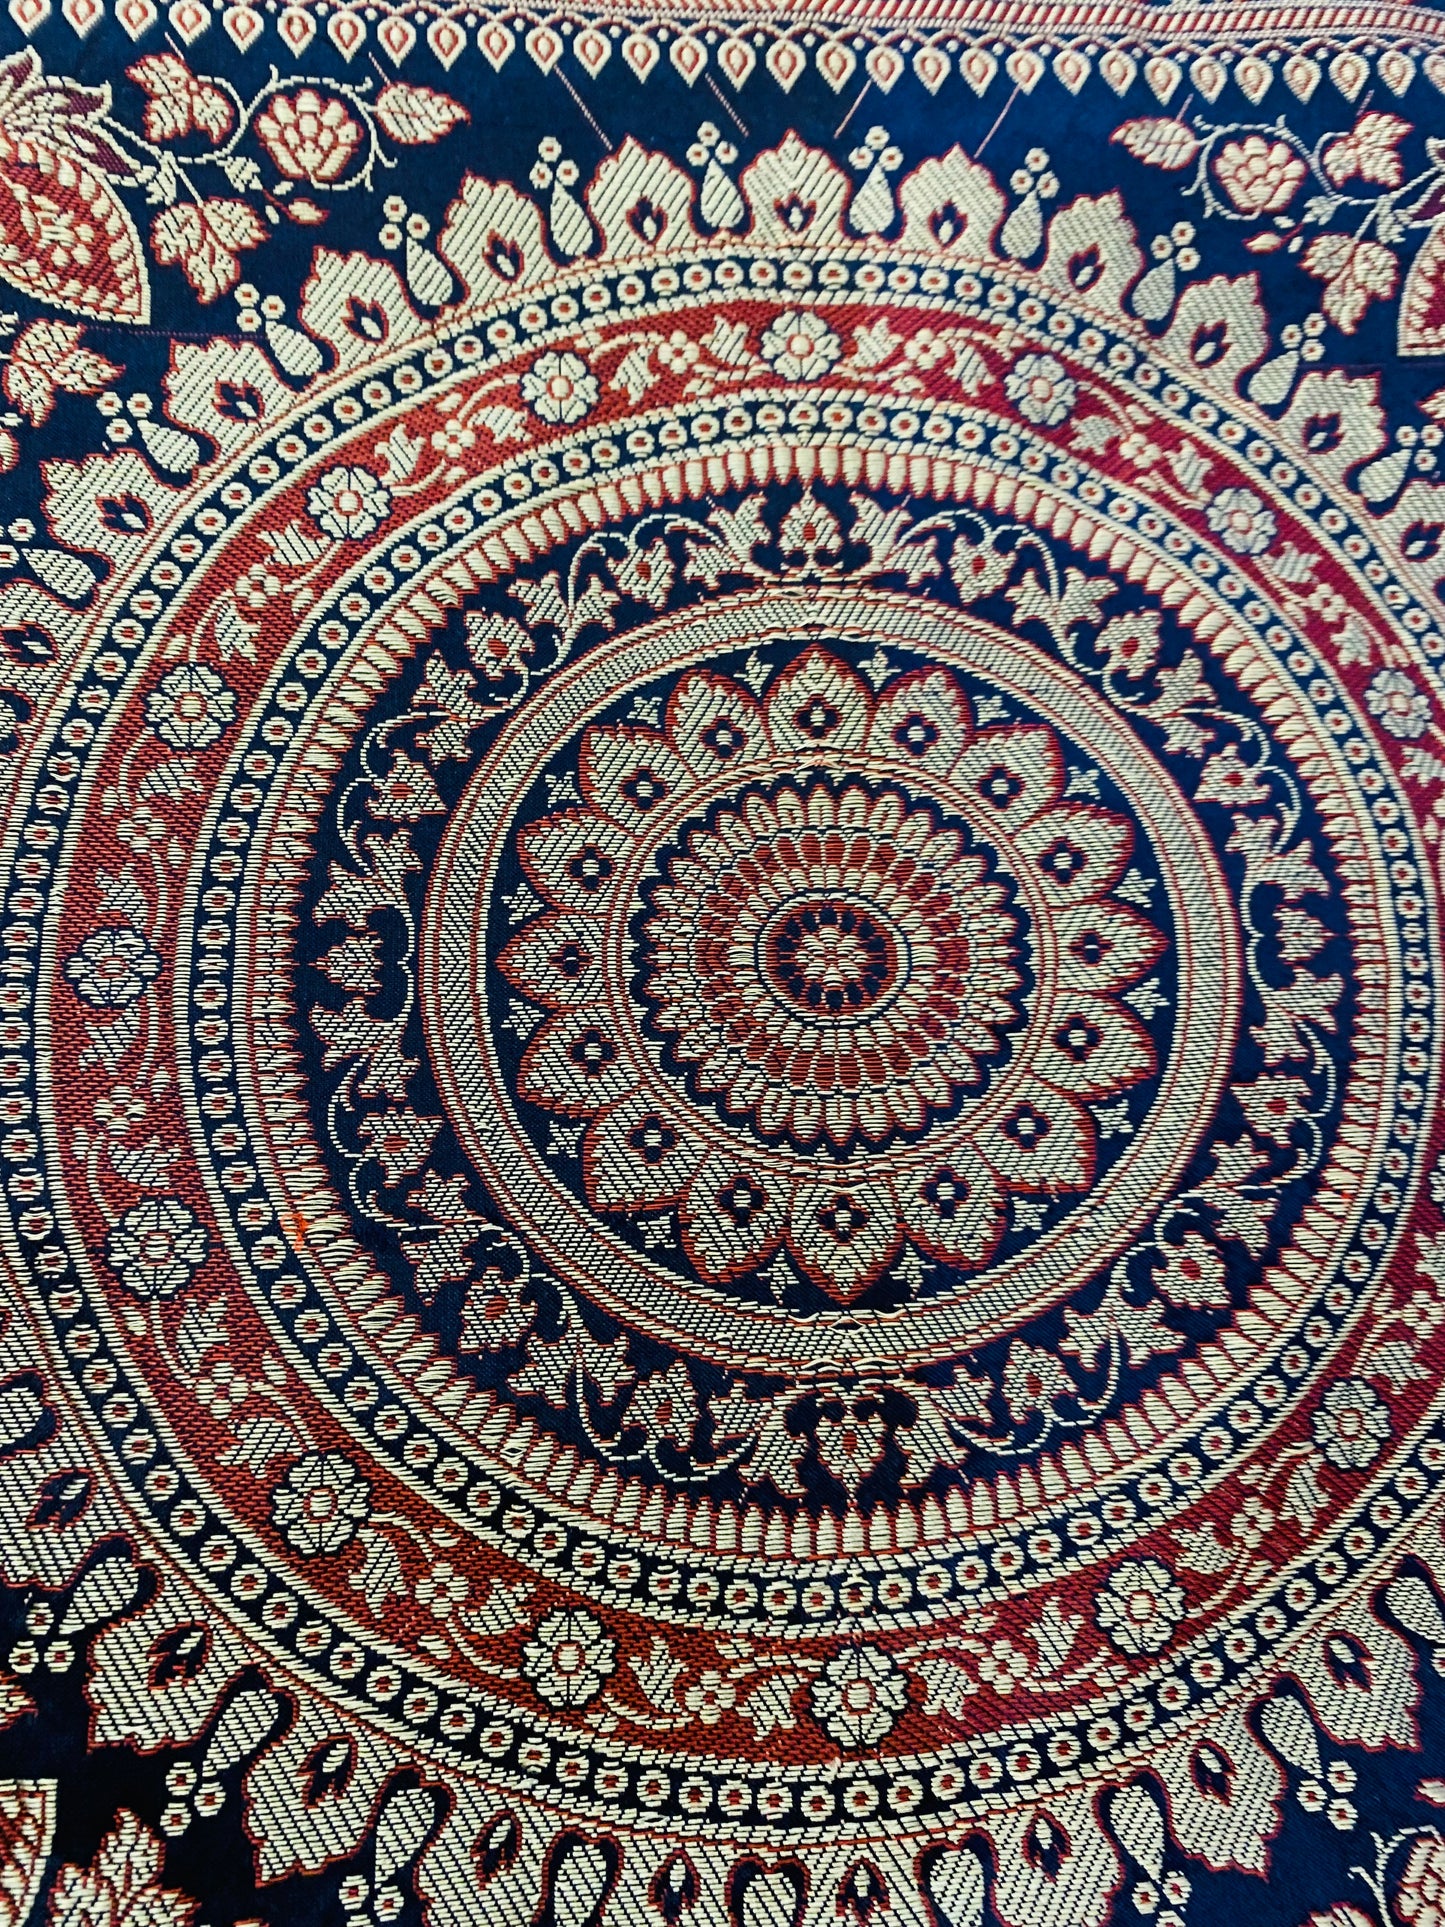 Boho style handcrafted ethnic Mandala cushion cover #792009